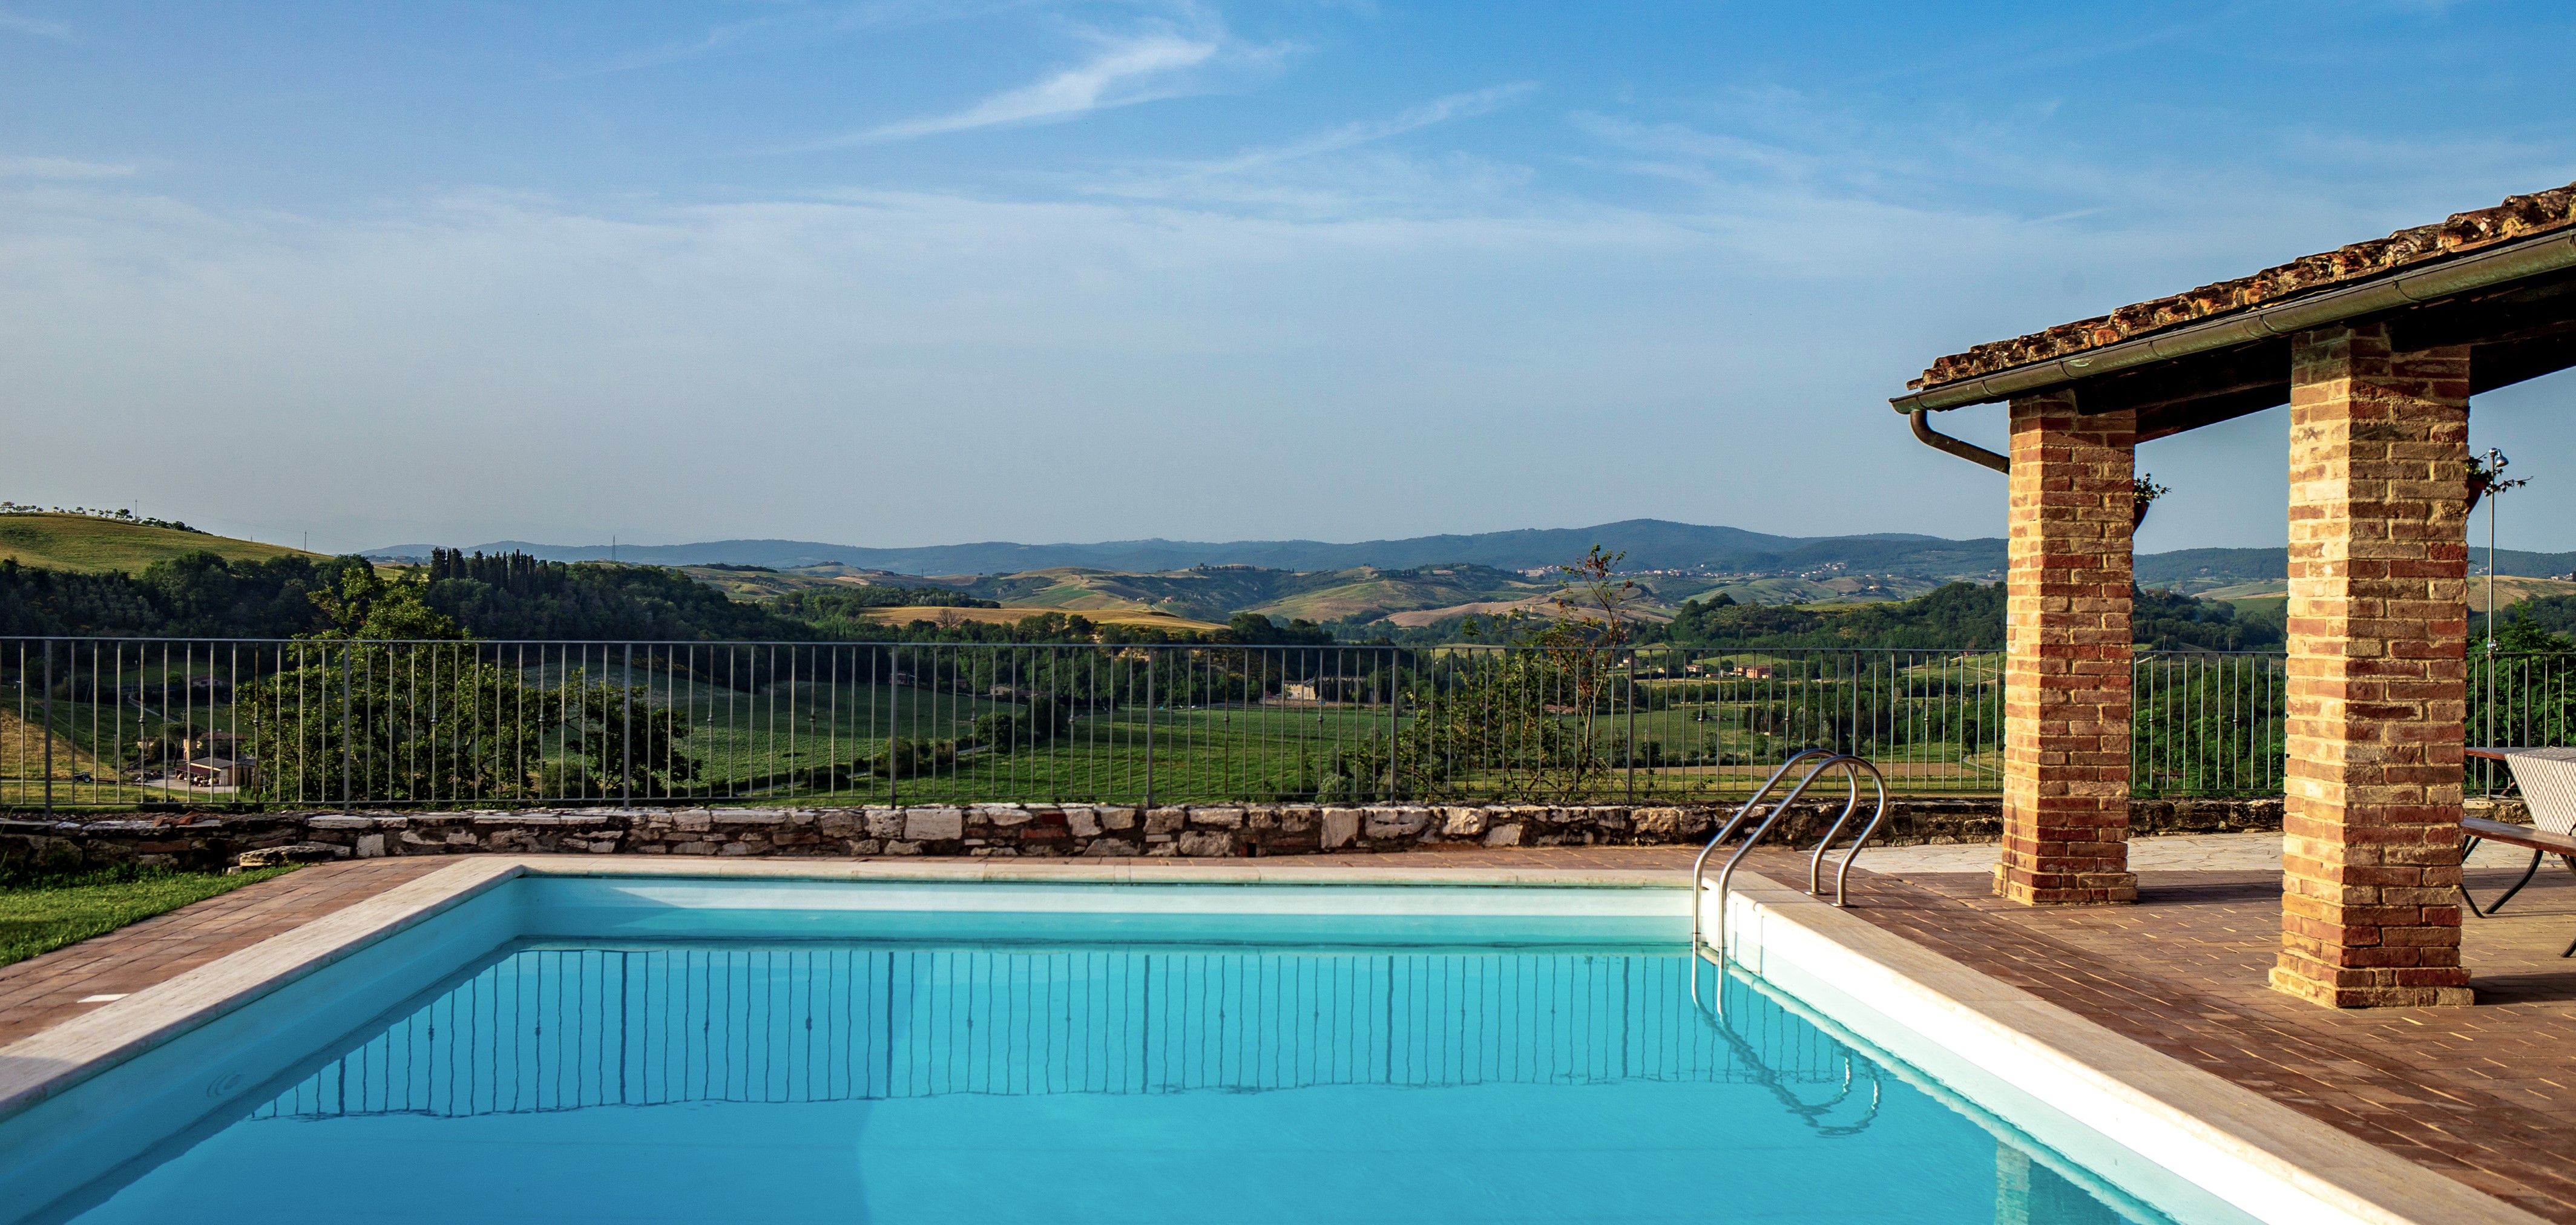 26_Agriturismo, vakantiewoning met zwembad, kleinschalig, Toscane, Siena, Montepulciano, Podere la Coppa, ItaliÃ«, appartementen (13) kopie